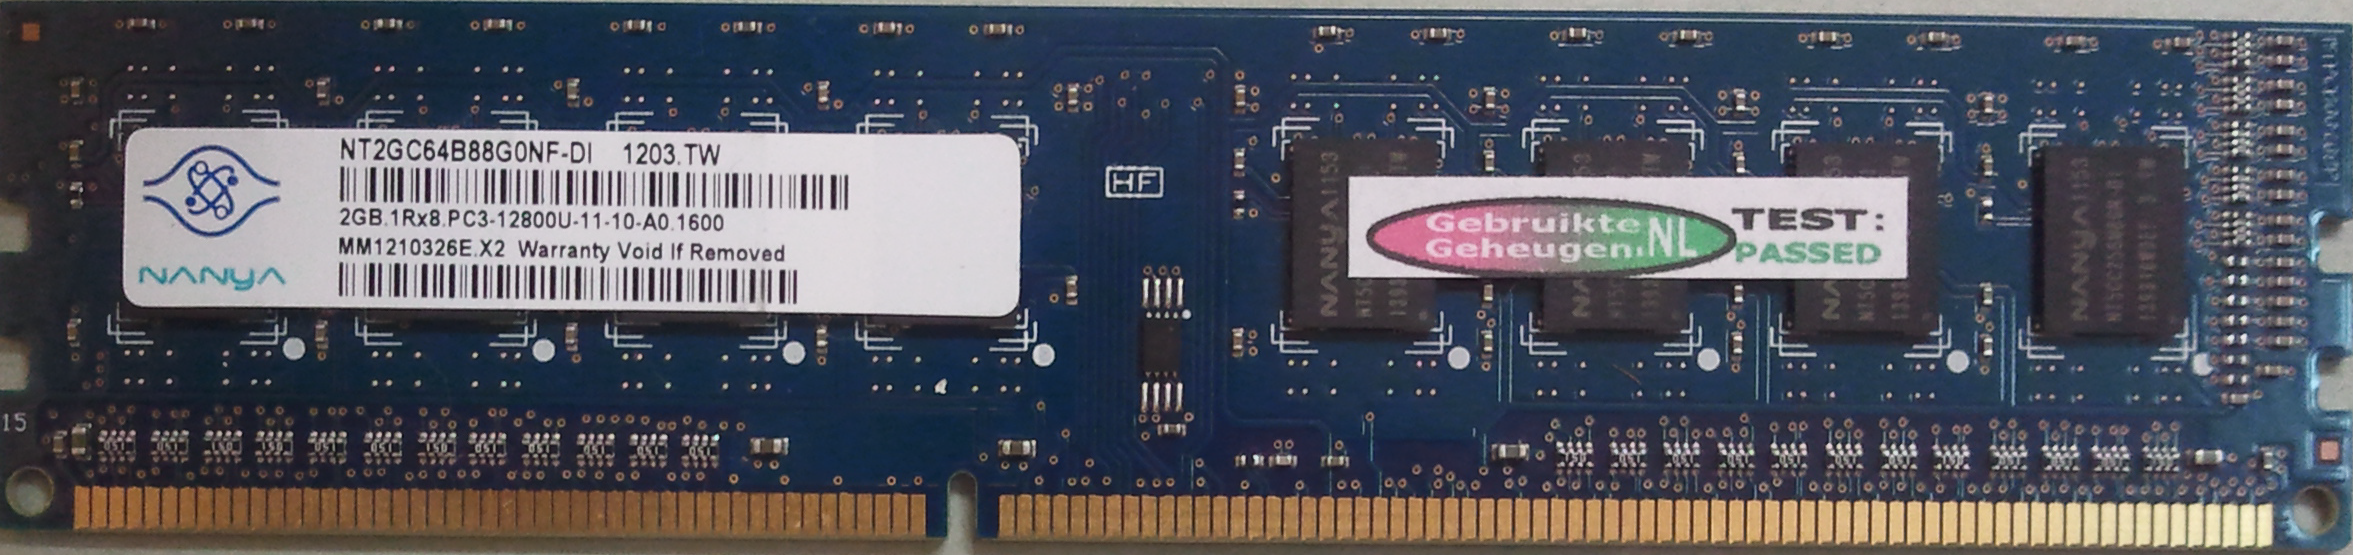 2GB 1Rx8 PC3-12800U-11-10-A0